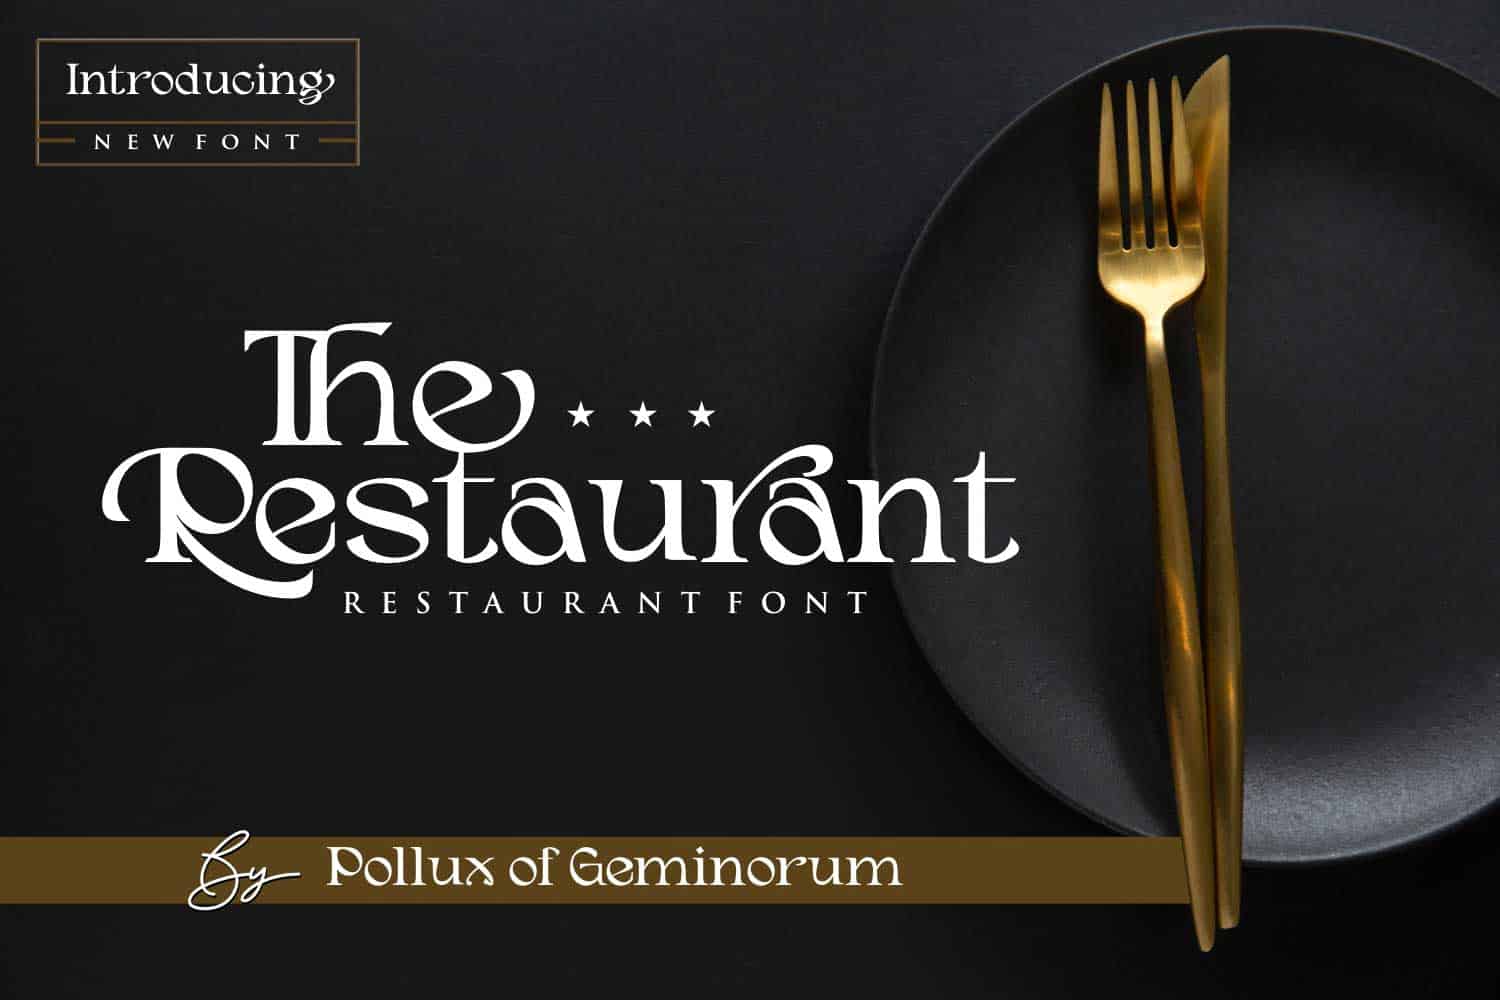 Restaurant Font The Restaurant cover black plate knive fork